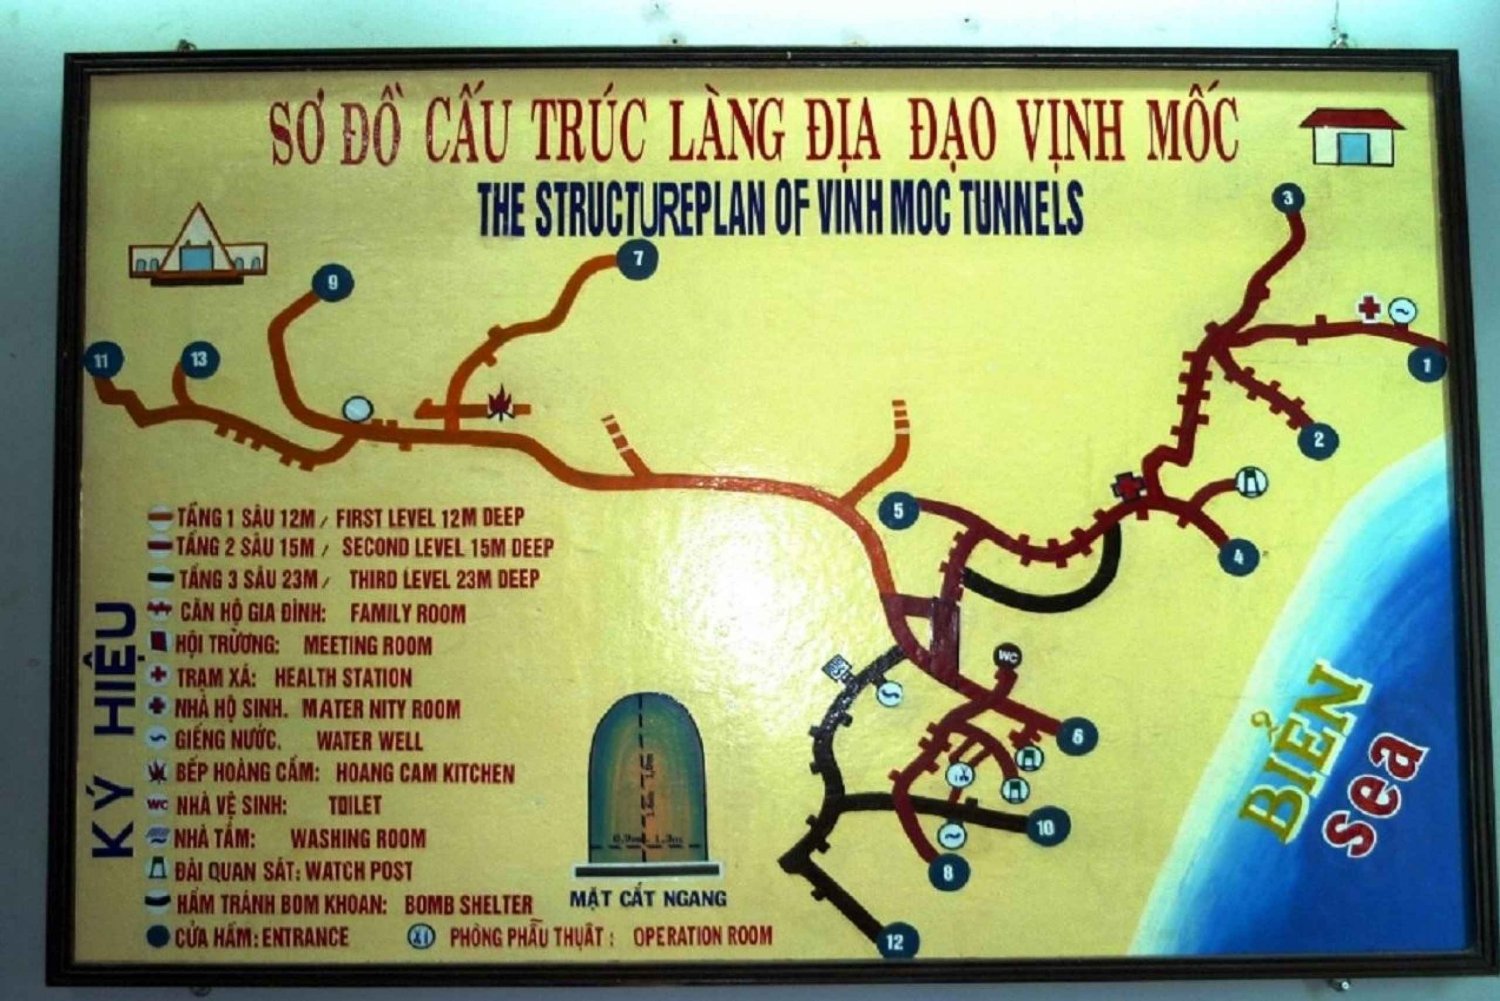 Depuis Hue : Visite de la zone démilitarisée du Vietnam avec les tunnels de Vinh Moc et Khe Sanh